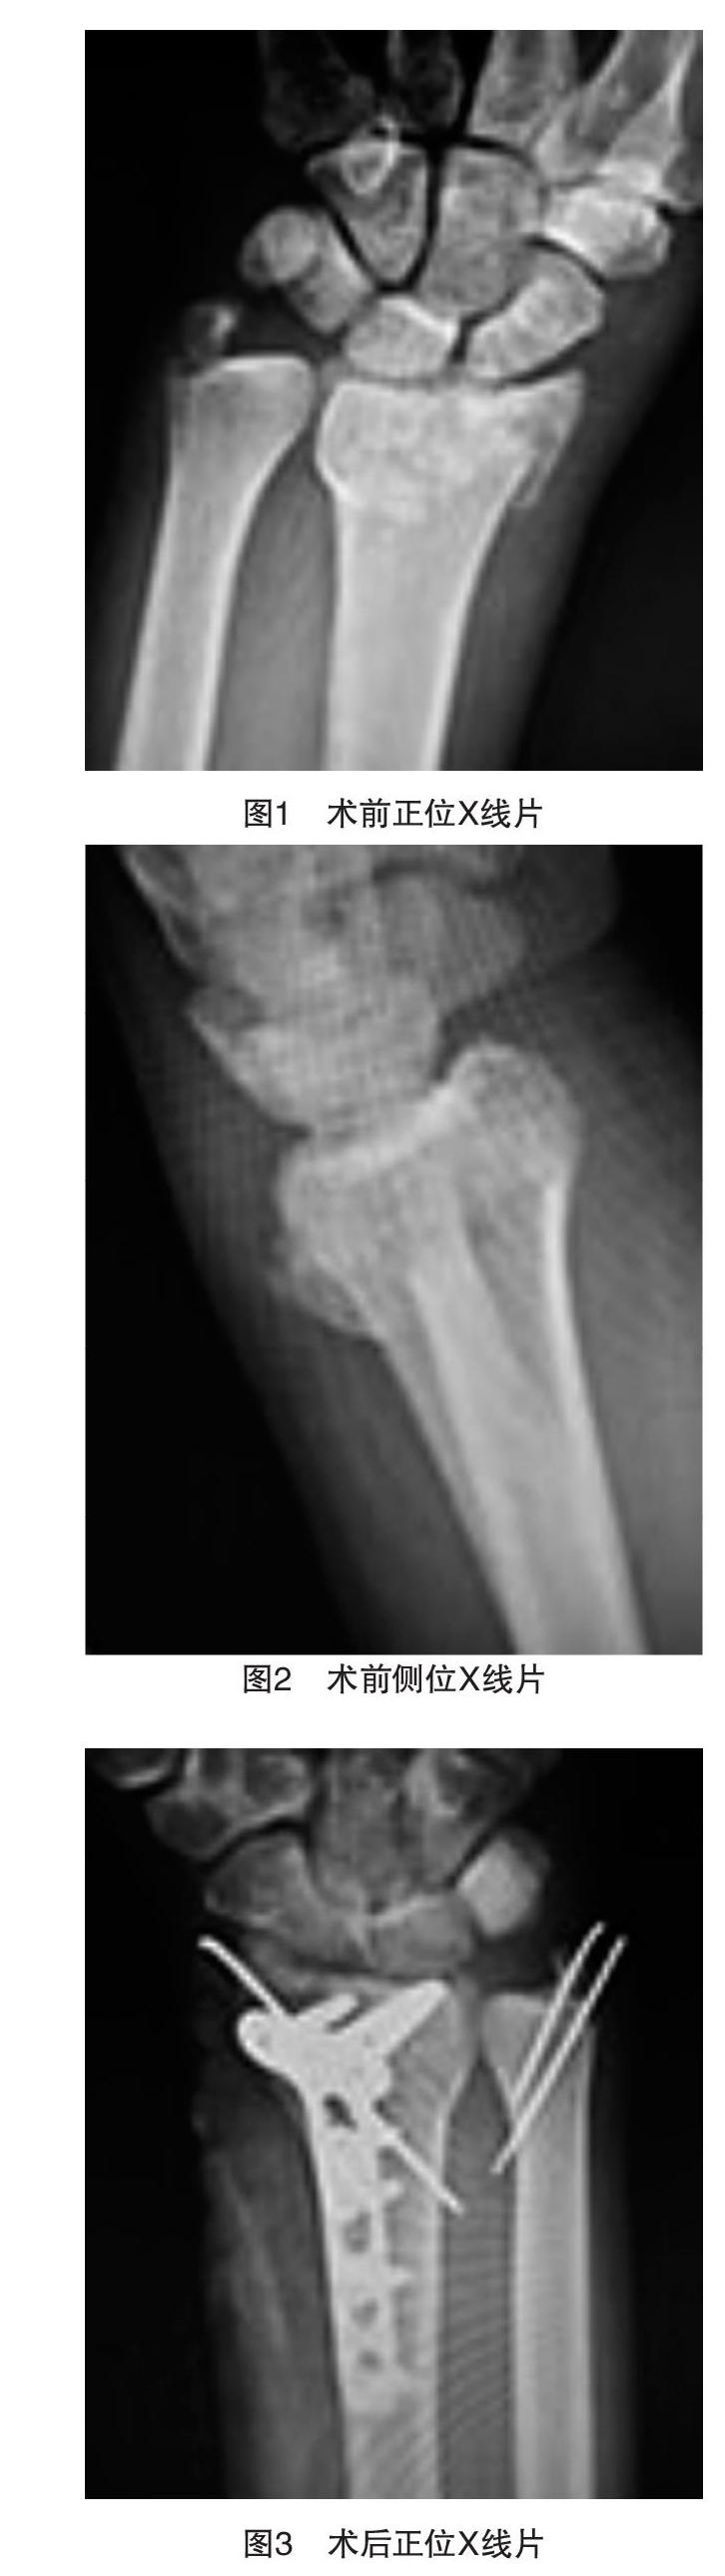 尺骨茎突基底部骨折的手术治疗对腕关节功能的影响 参考网